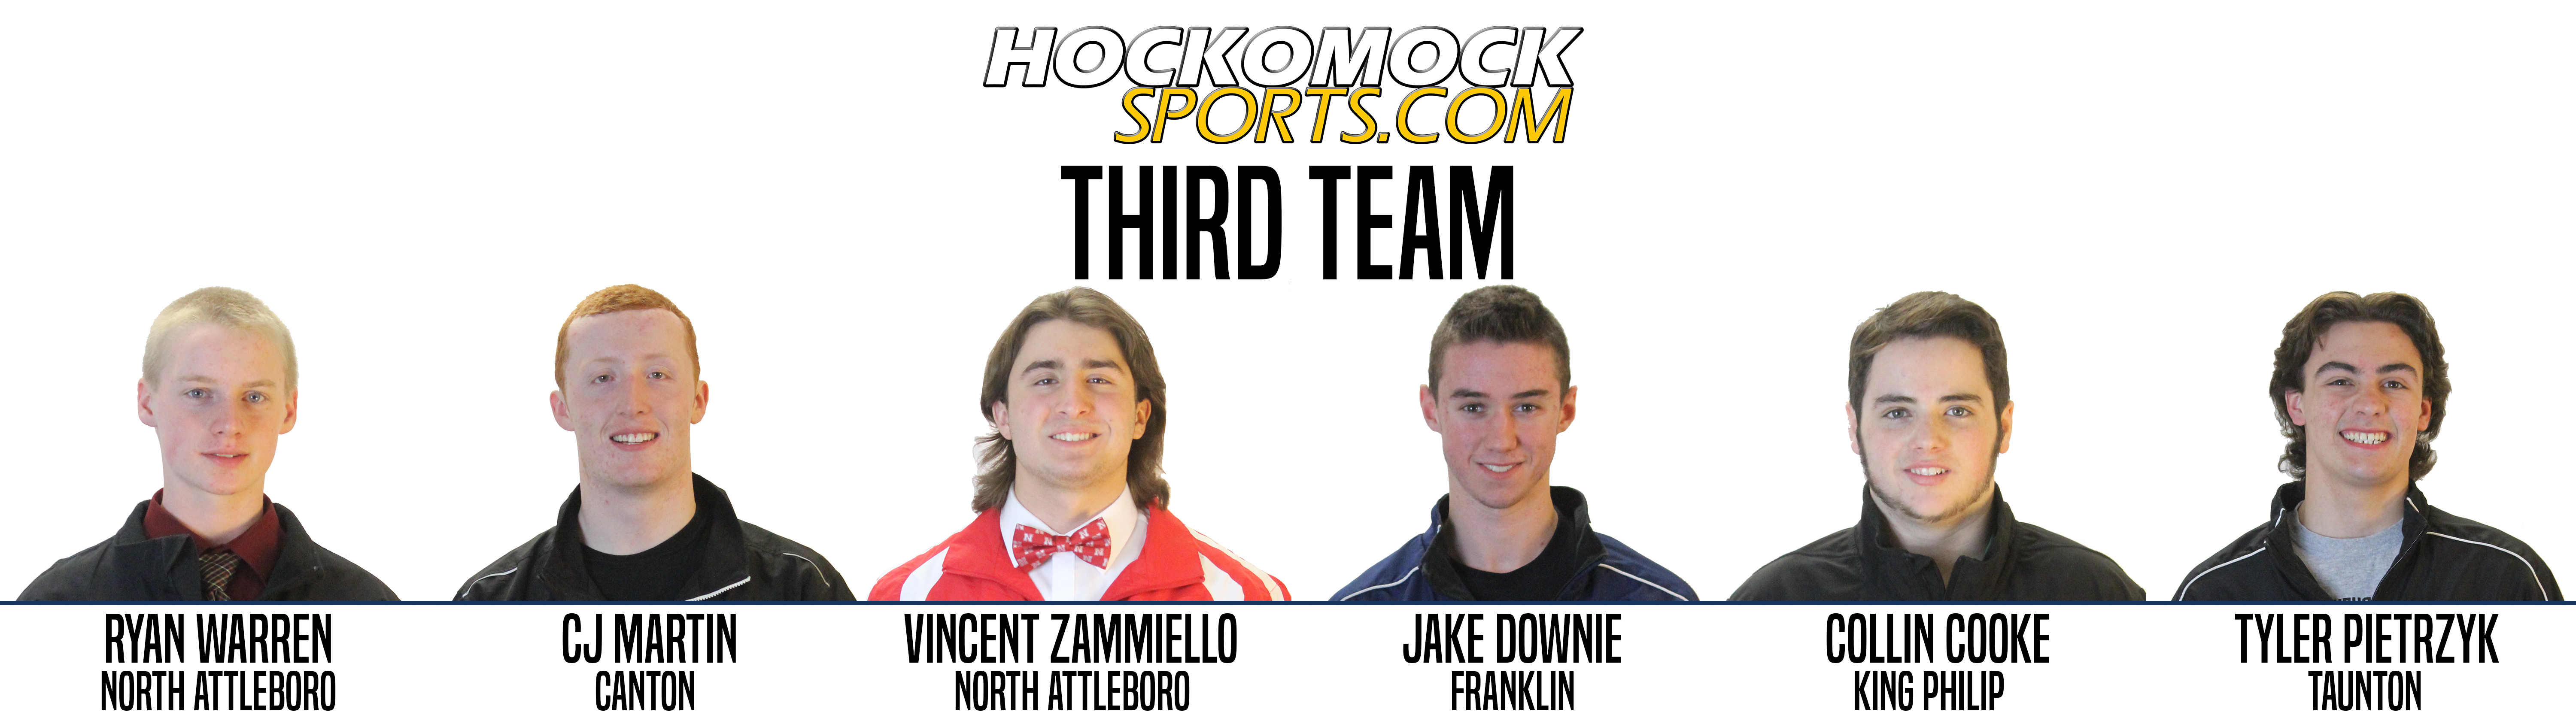 2016 HockomockSports Hockey Awards